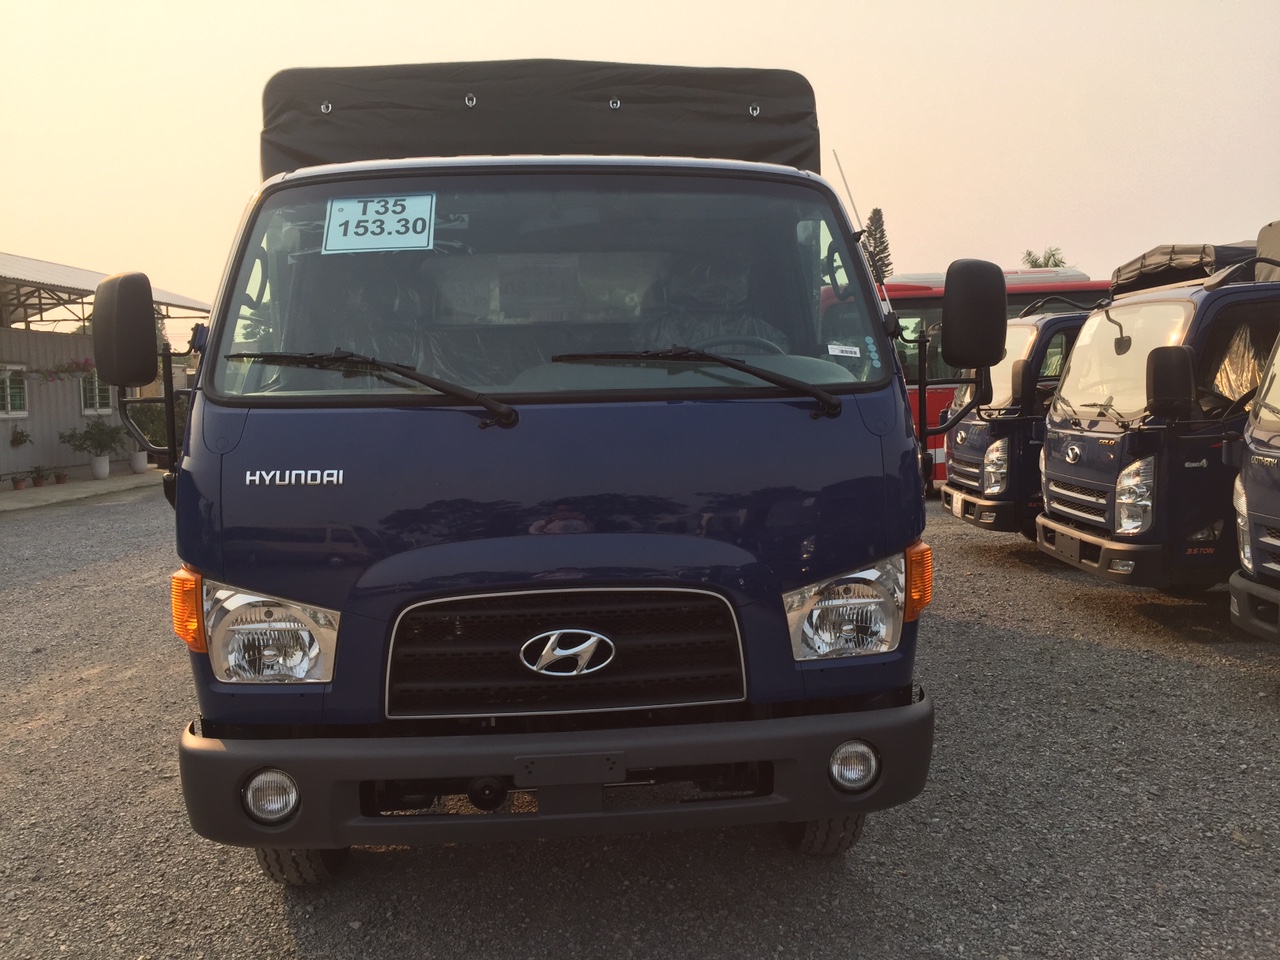 Xe tải Hyundai 110S - 110SP 7 tấn thùng dài 5m - 2020